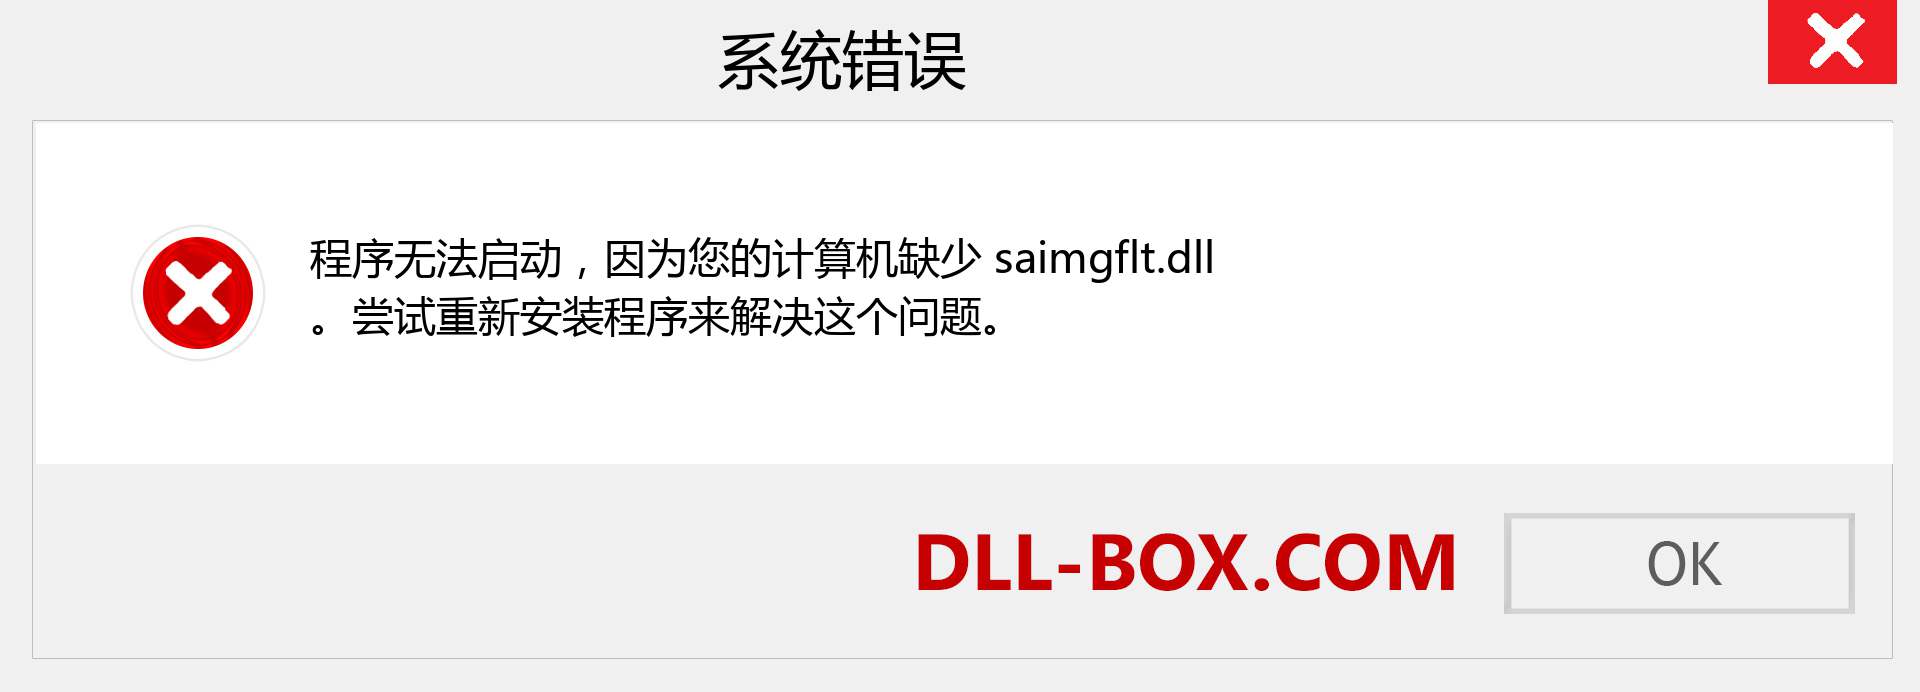 saimgflt.dll 文件丢失？。 适用于 Windows 7、8、10 的下载 - 修复 Windows、照片、图像上的 saimgflt dll 丢失错误